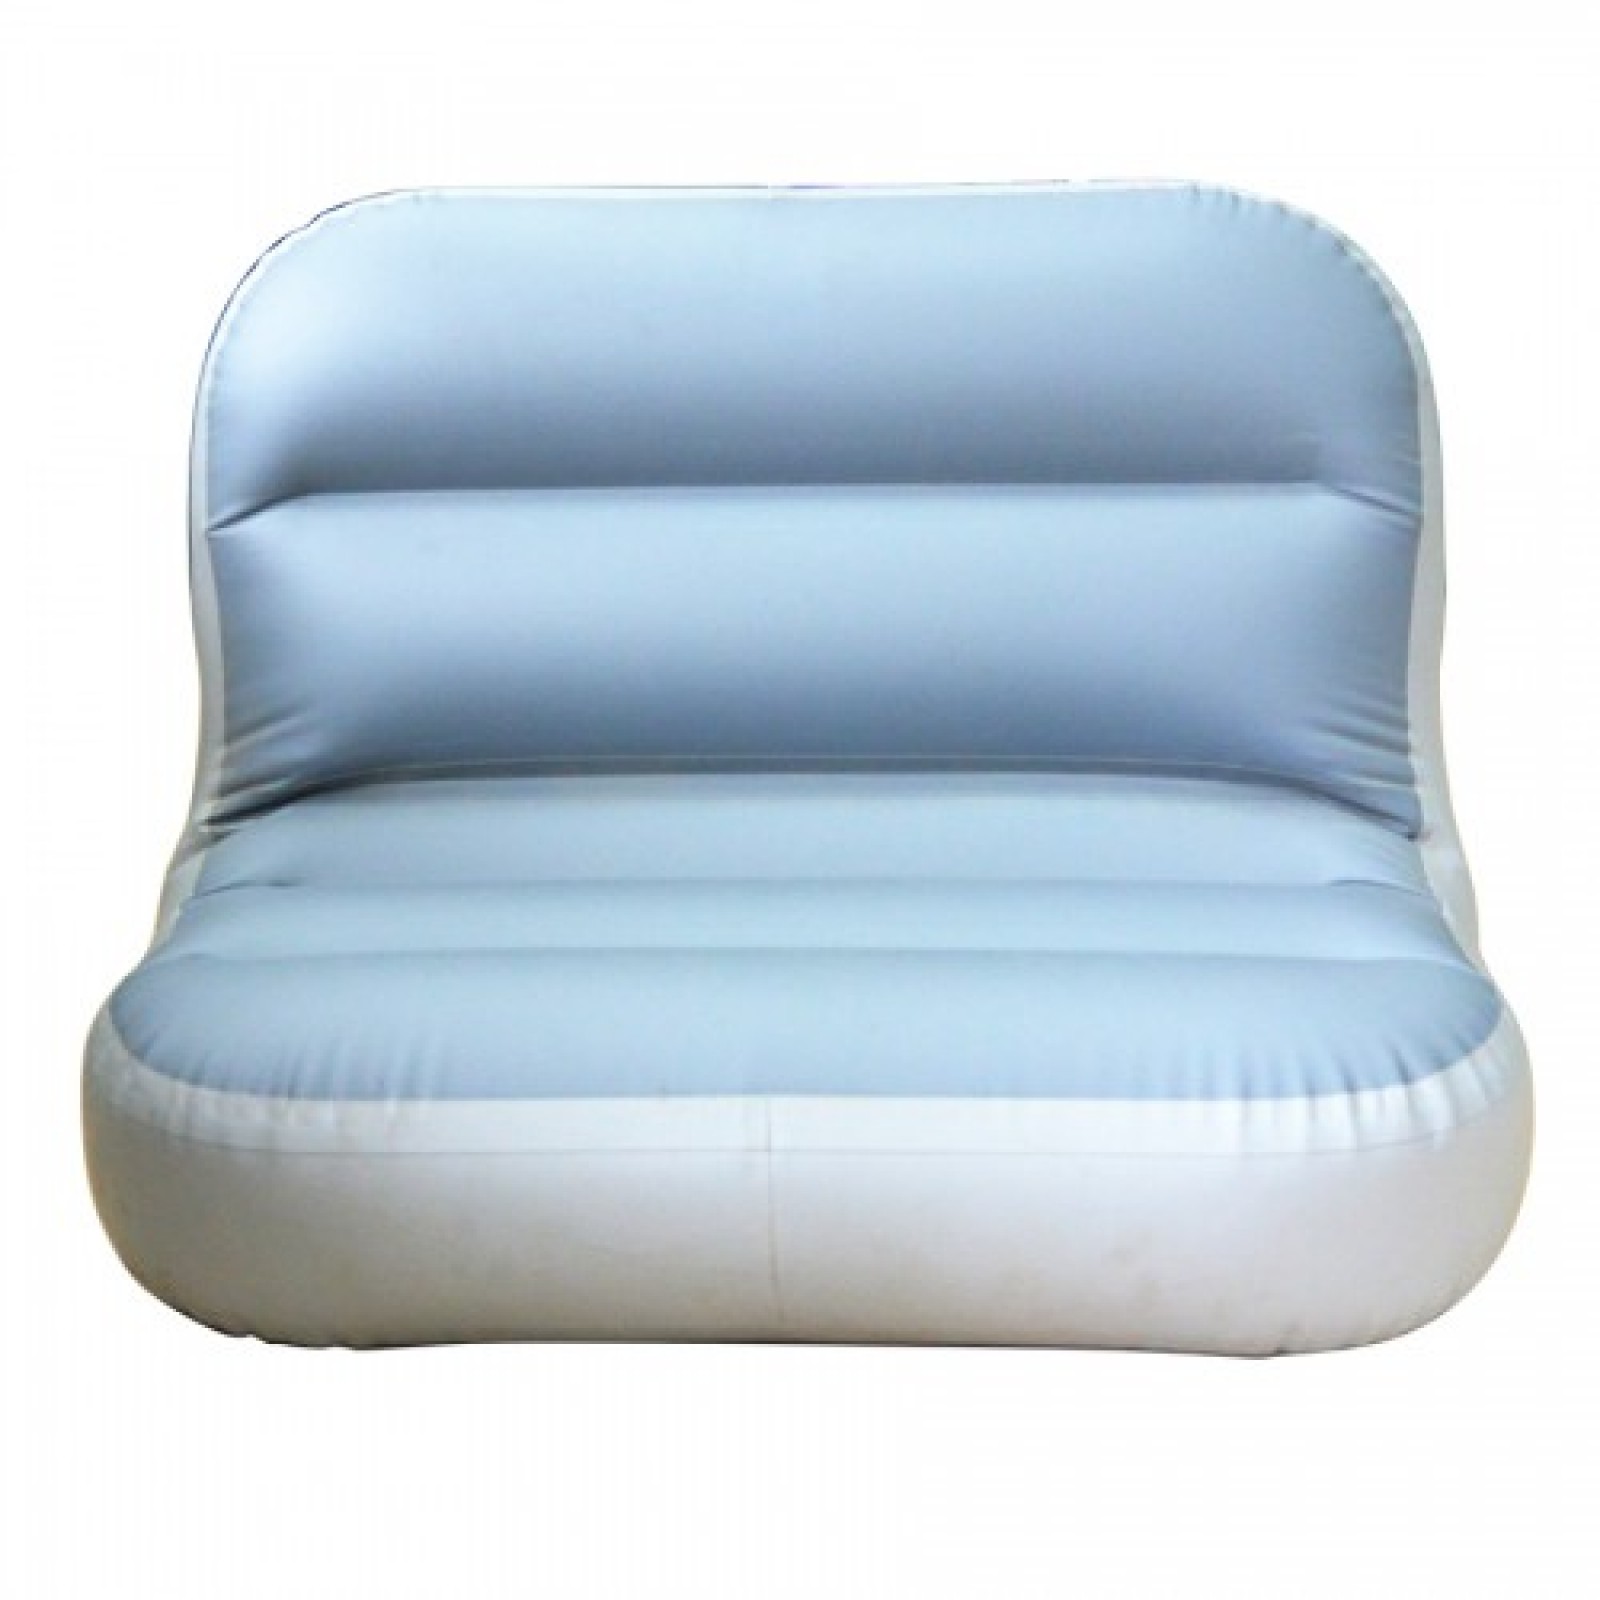 Сиденье надувное пвх. Надувное кресло Bambi MS 0651. Надувное универсальное сиденье «комфорт-ТТ». Надувное кресло в лодку ПВХ. Надувное сиденье для лодки ПВХ.